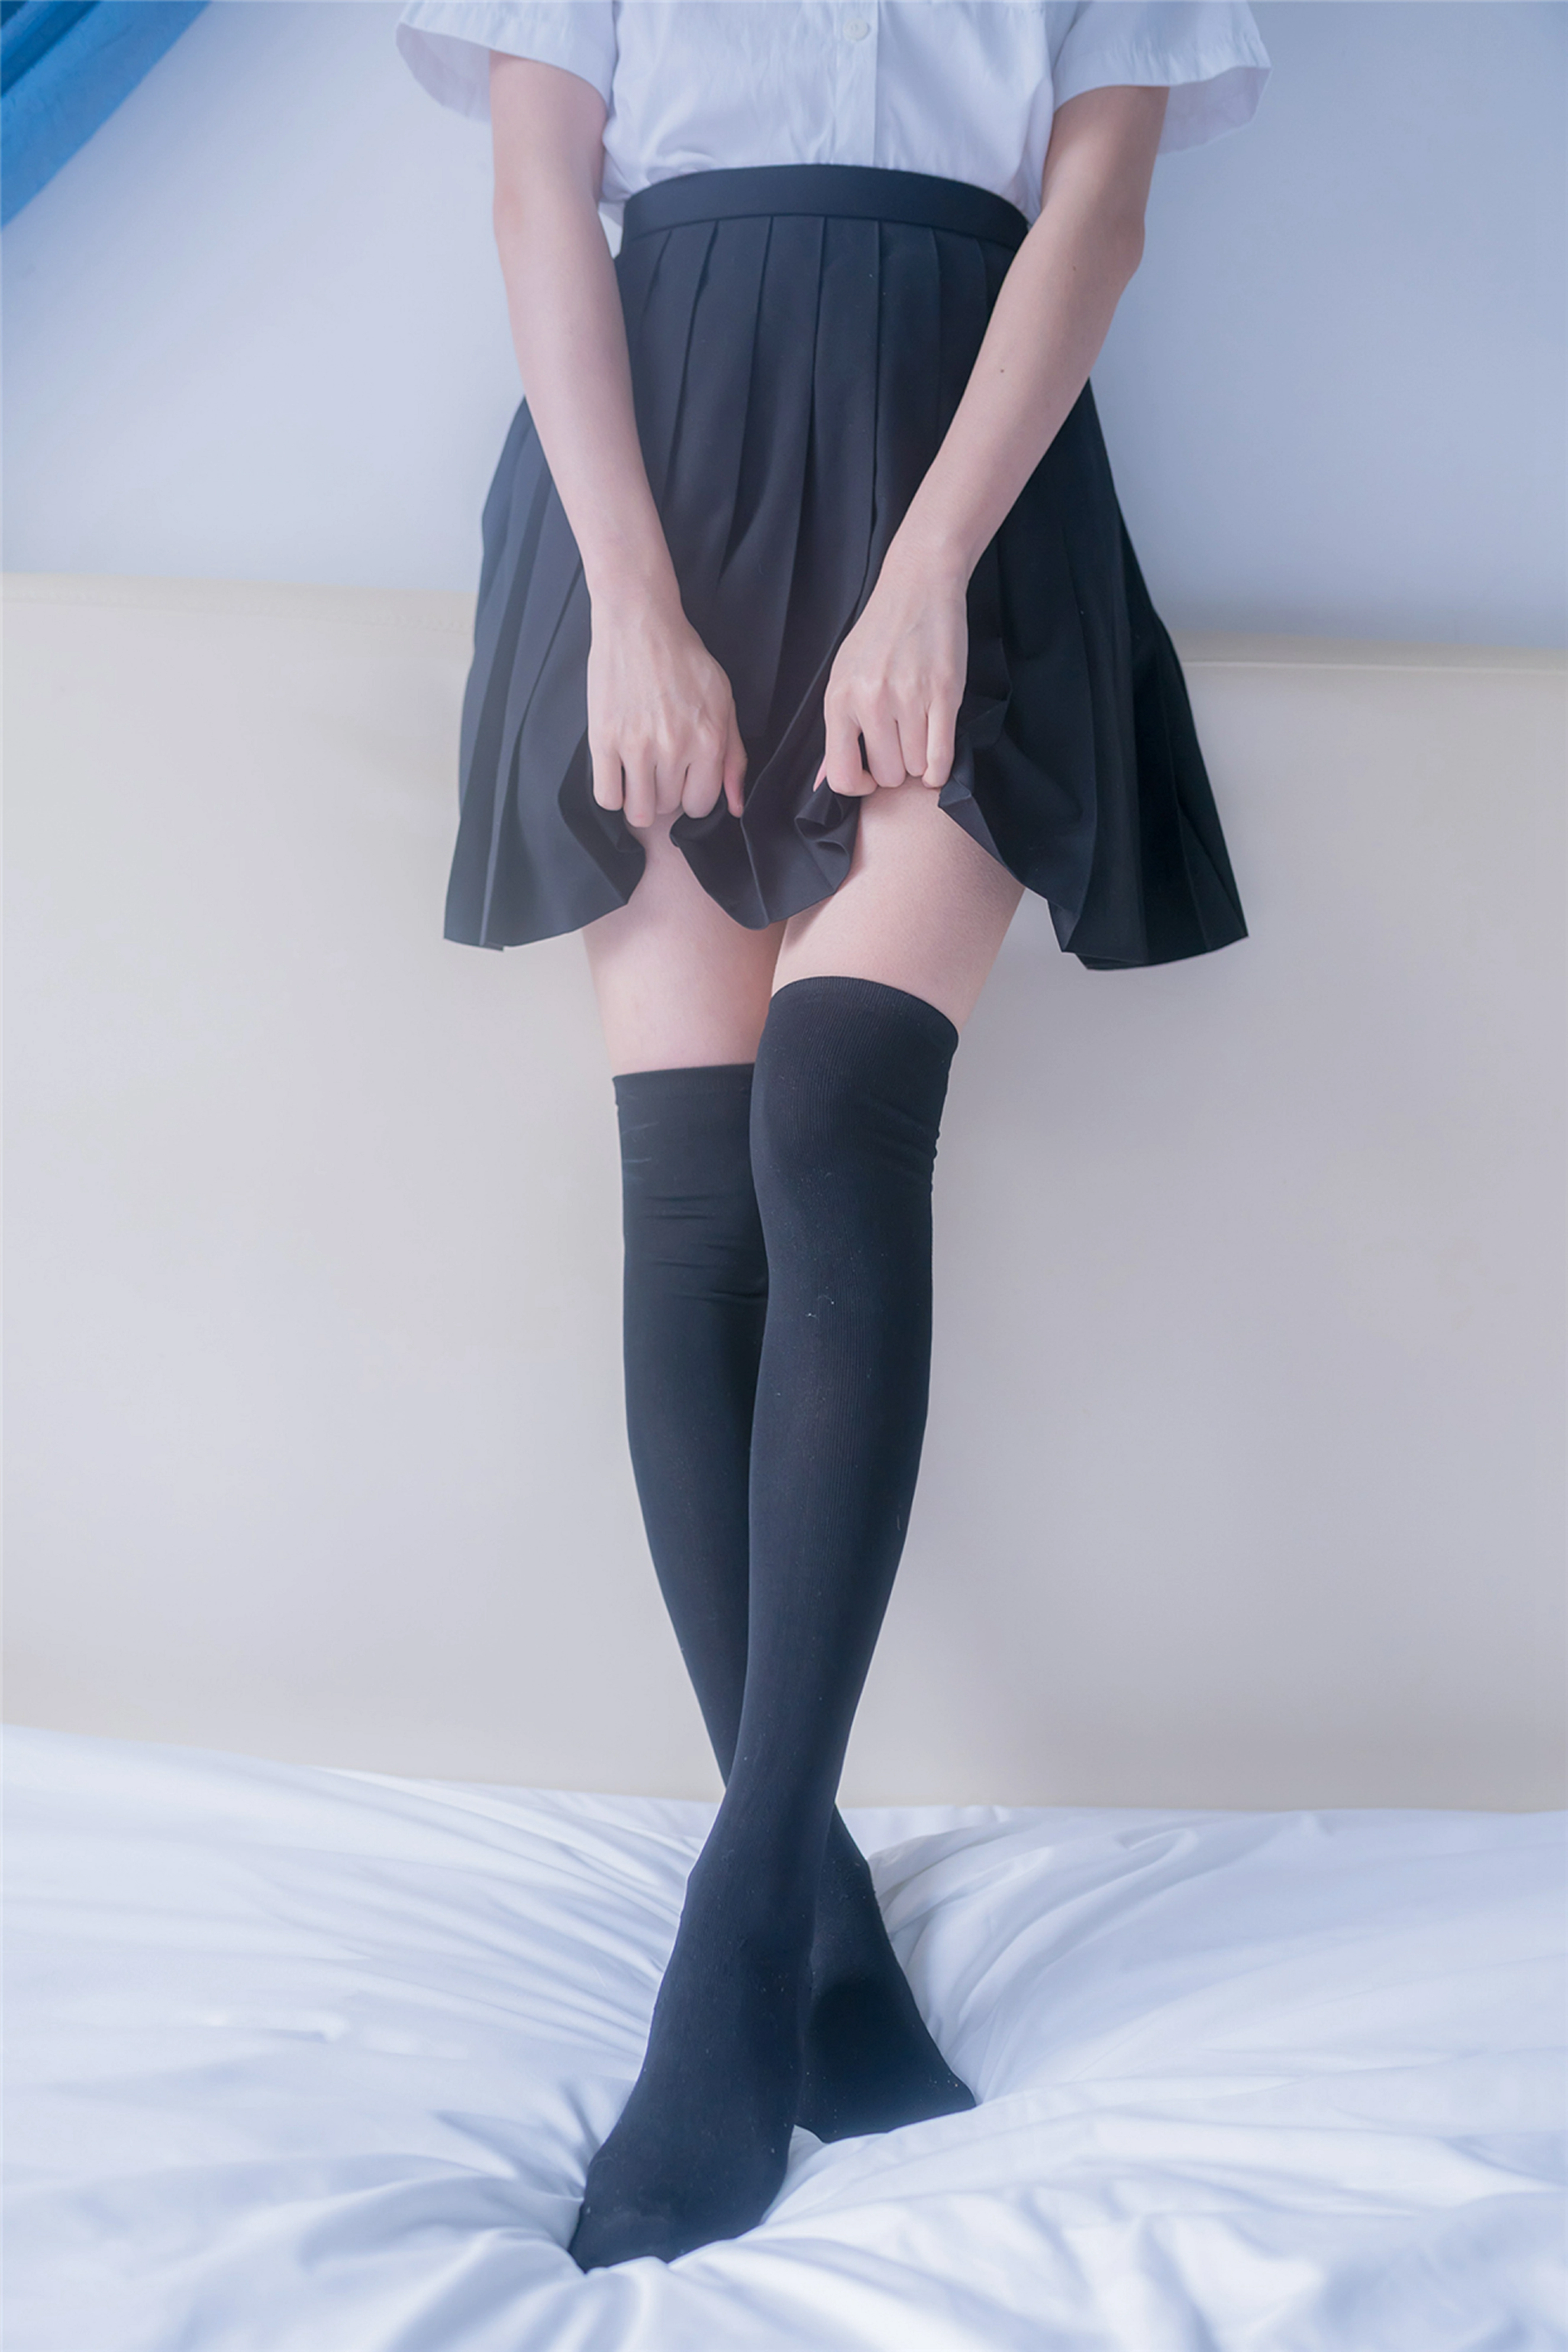 [风之领域]NO.193 高中学妹小萝莉 黑色短裙加黑丝美腿性感私房写真集,